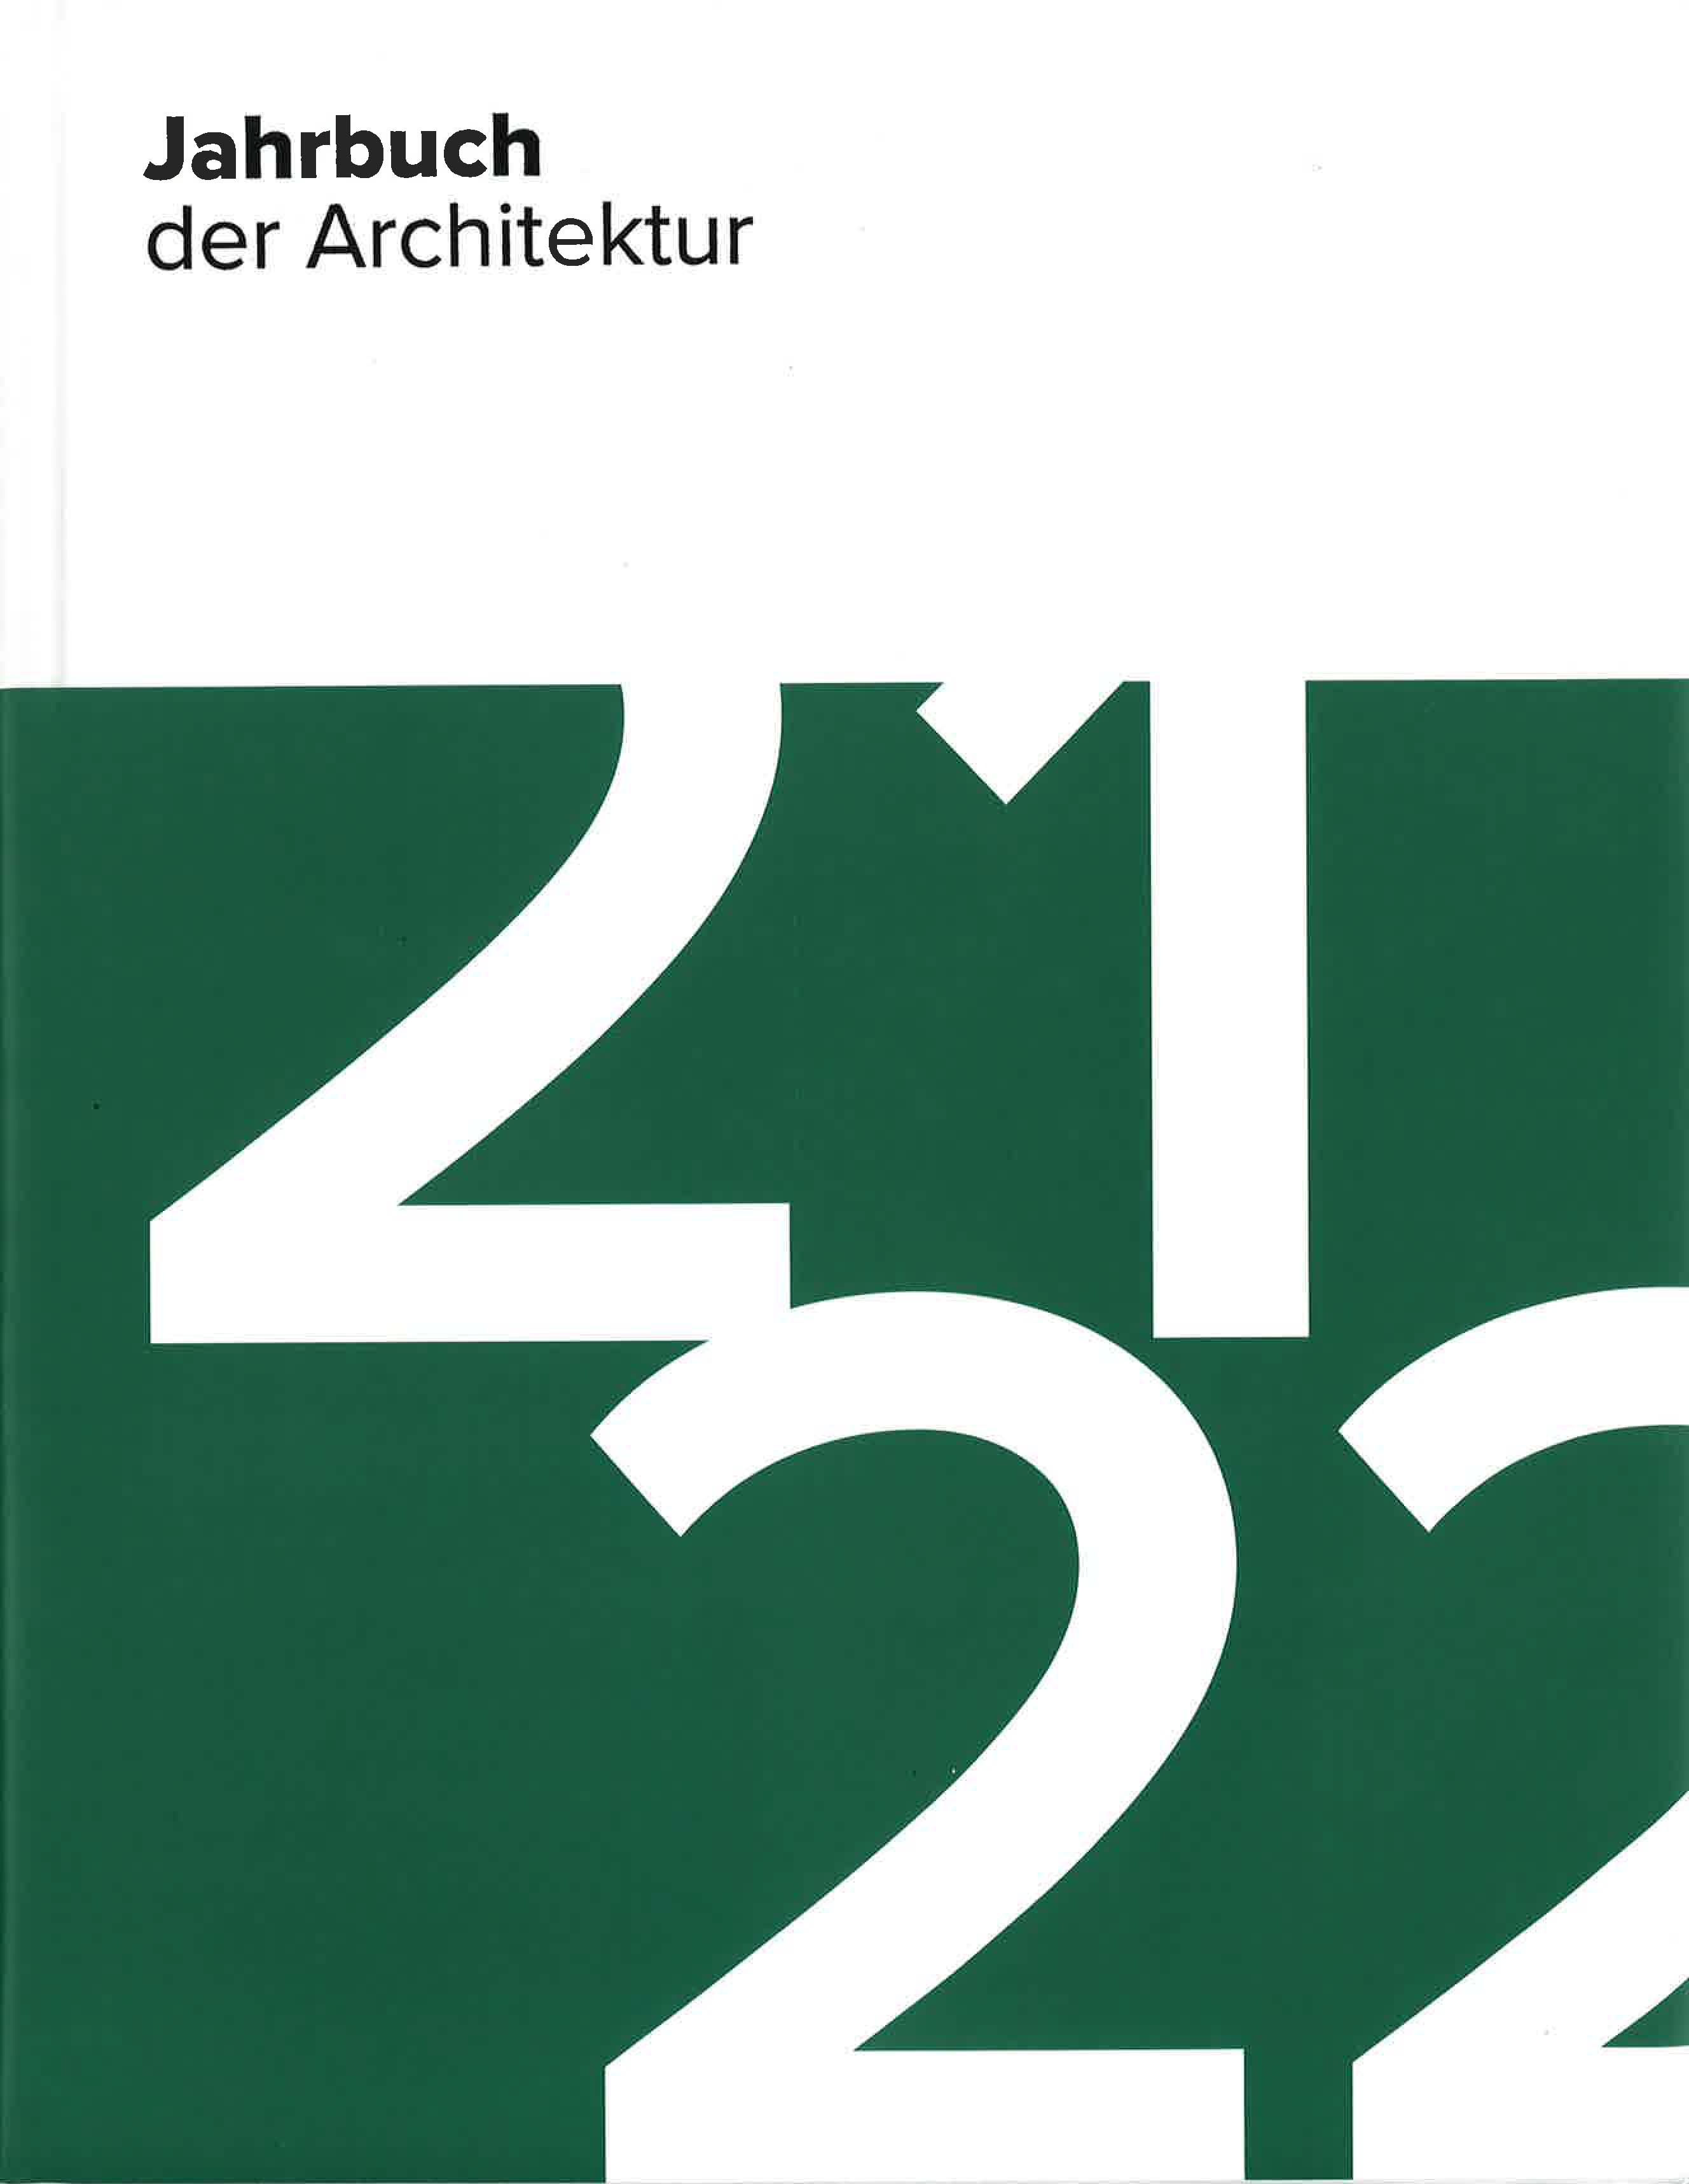 Jahrbuch der Architektur 21 22_Deutscher Architektur Verlag_Hotel Amano Romy_Berlin_GBP Architekten.jpg